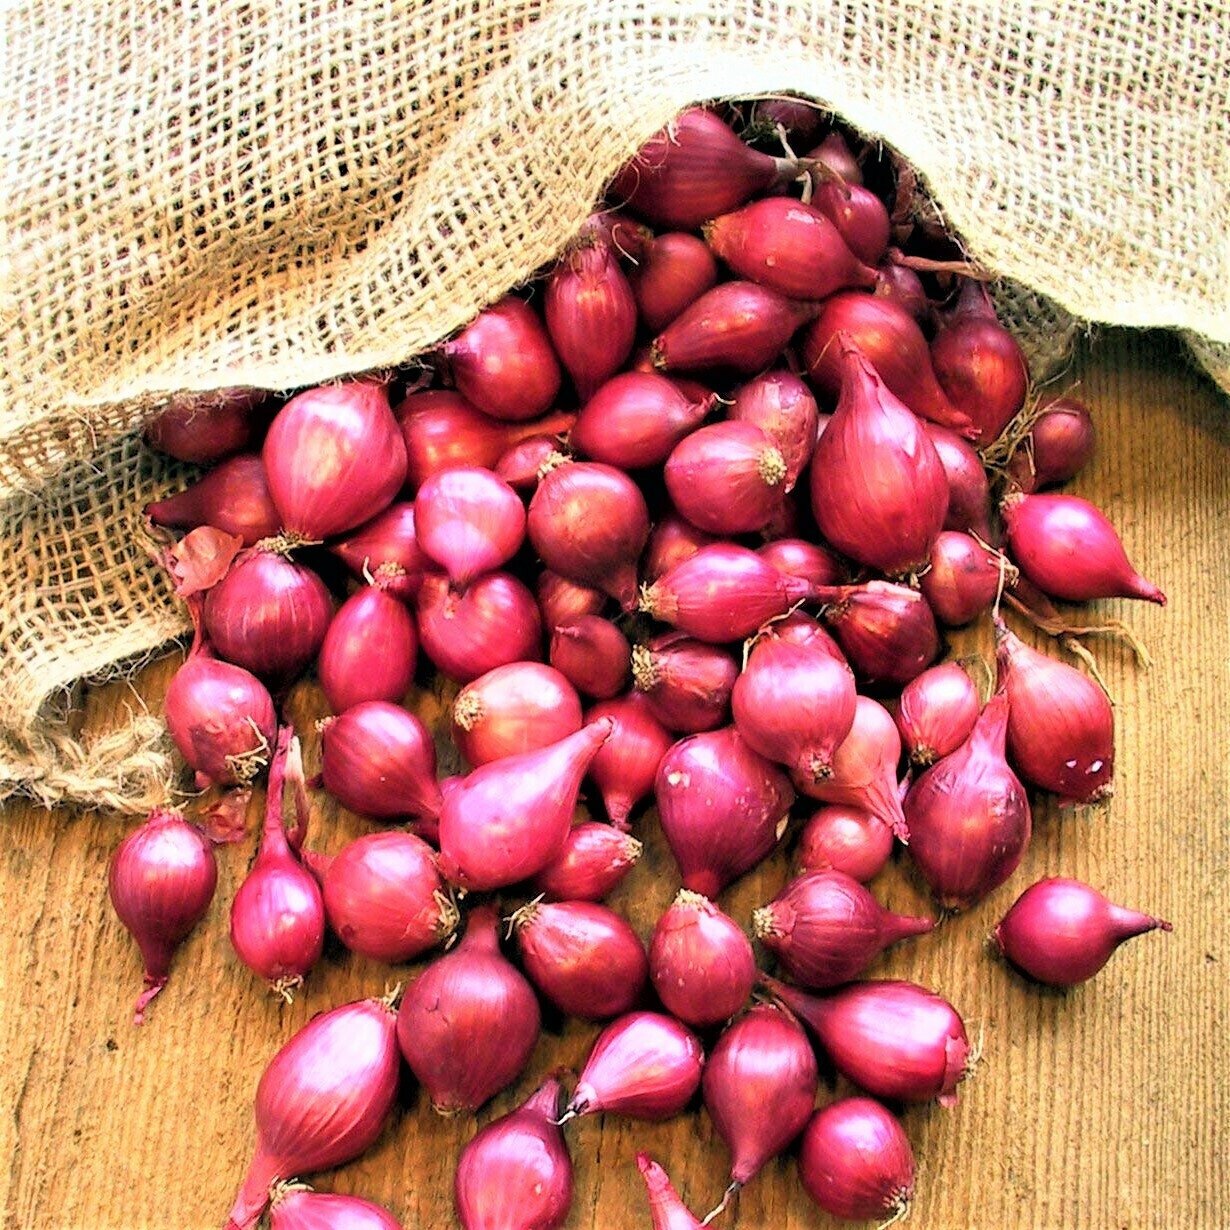 Лук-севок "Кармен", 0,5 кг (14-21мм): красный салатный сорт для посадки в огород; обладает прекрасным вкусом, относительно неприхотлив в выращивании.